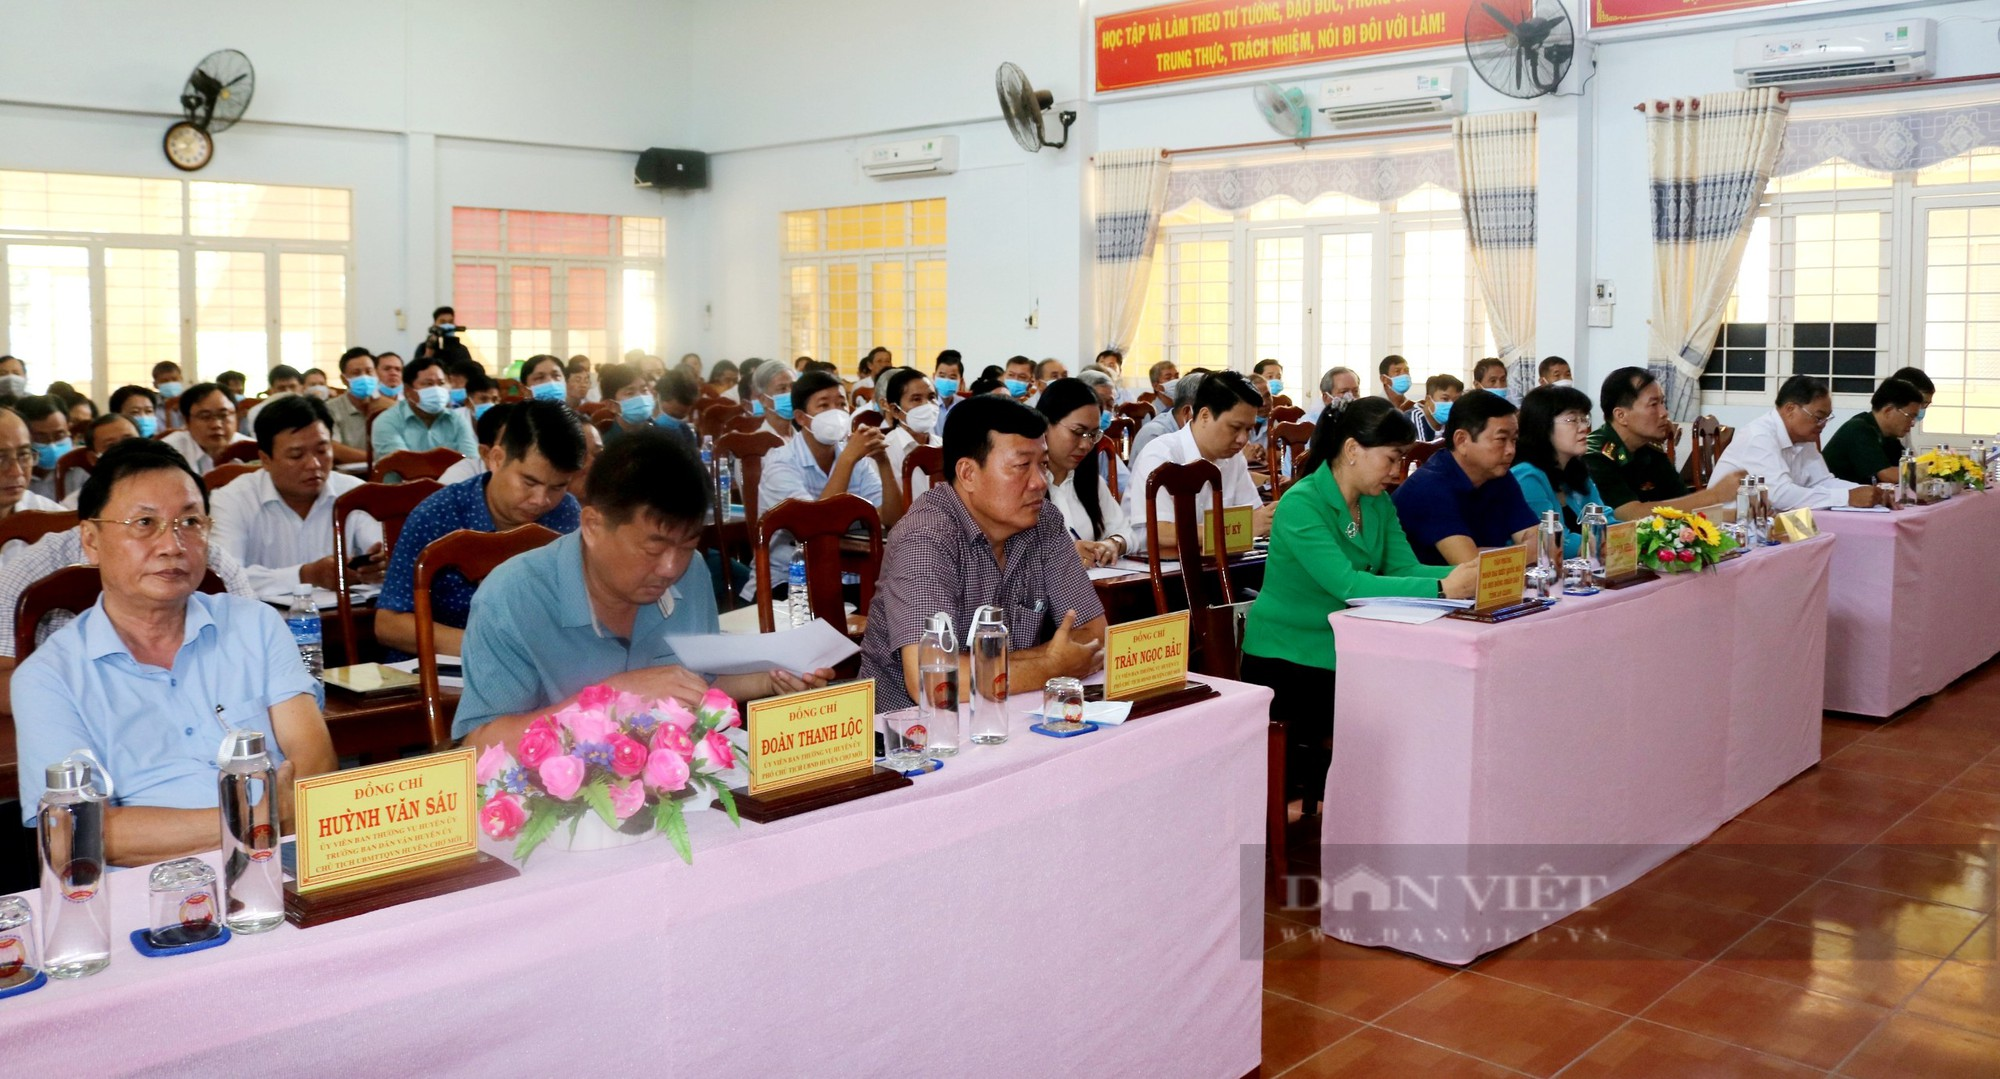 Chủ tịch Hội NDVN và đoàn đại biểu Quốc hội tỉnh An Giang tiếp xúc cử tri thuyện Chợ Mới - Ảnh 2.